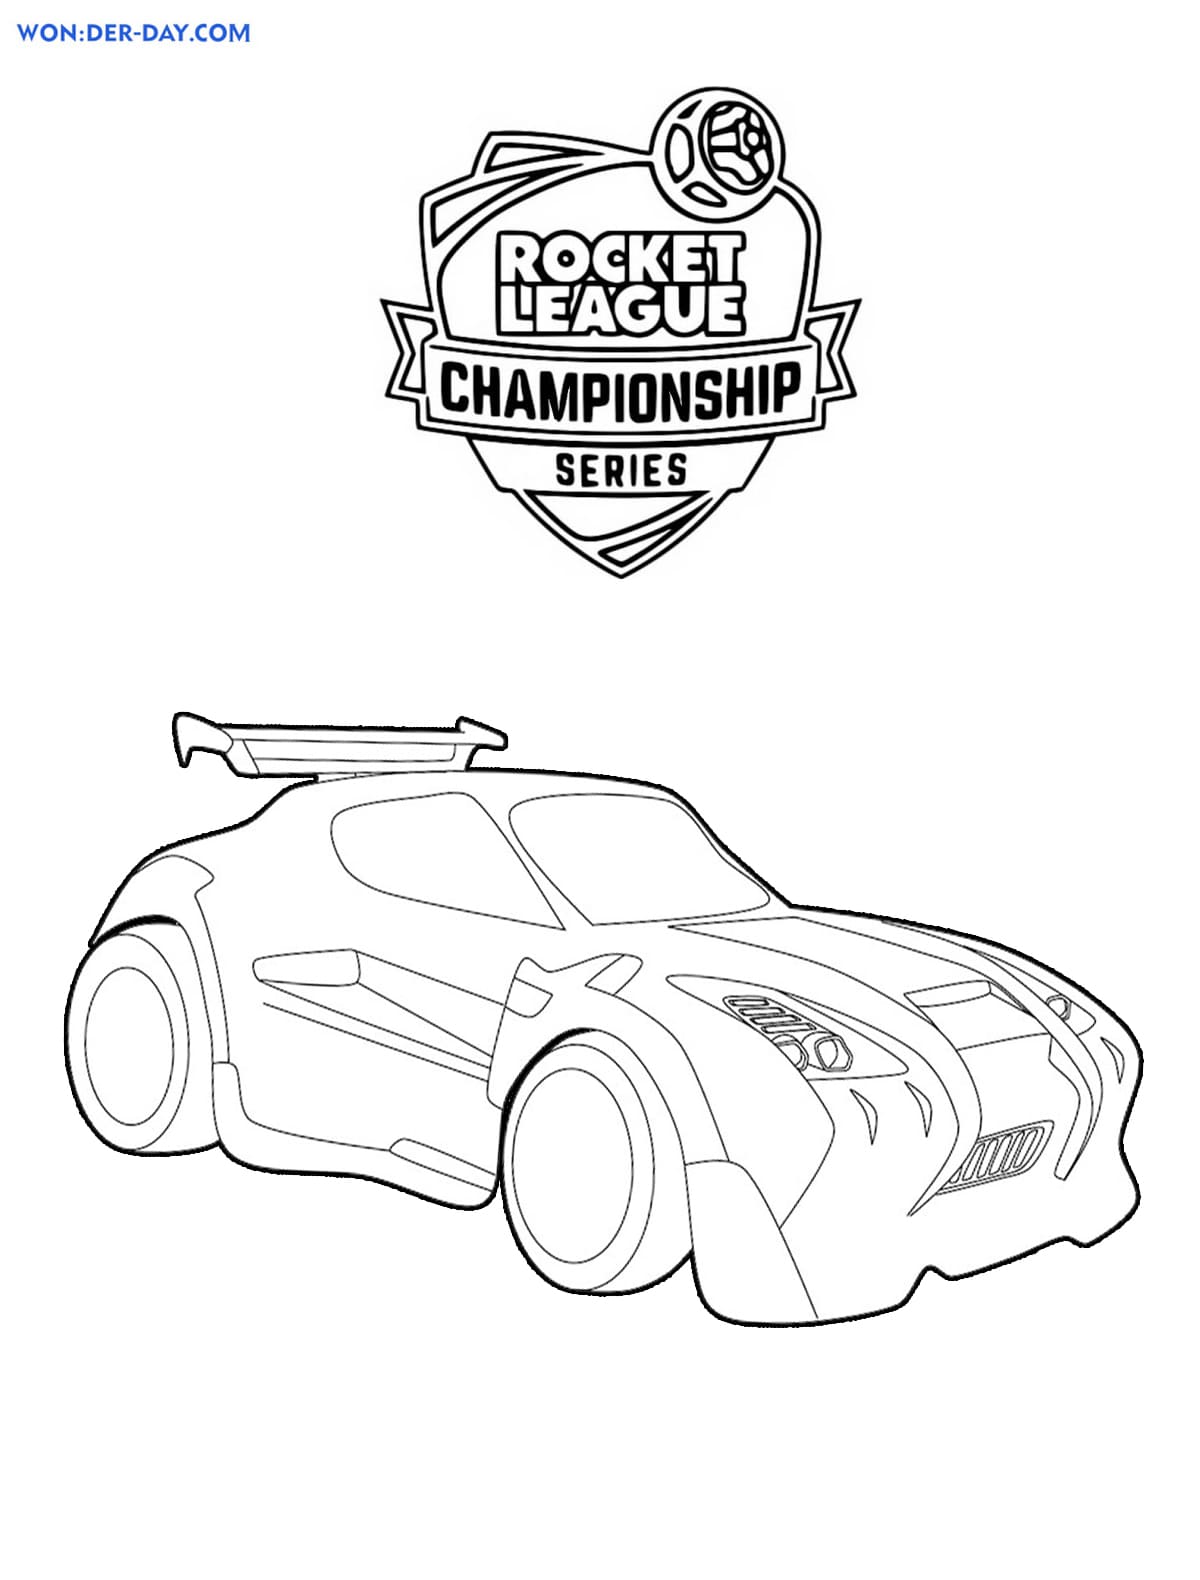 Rocket League Coloring pages . Print ...wonder-day.com